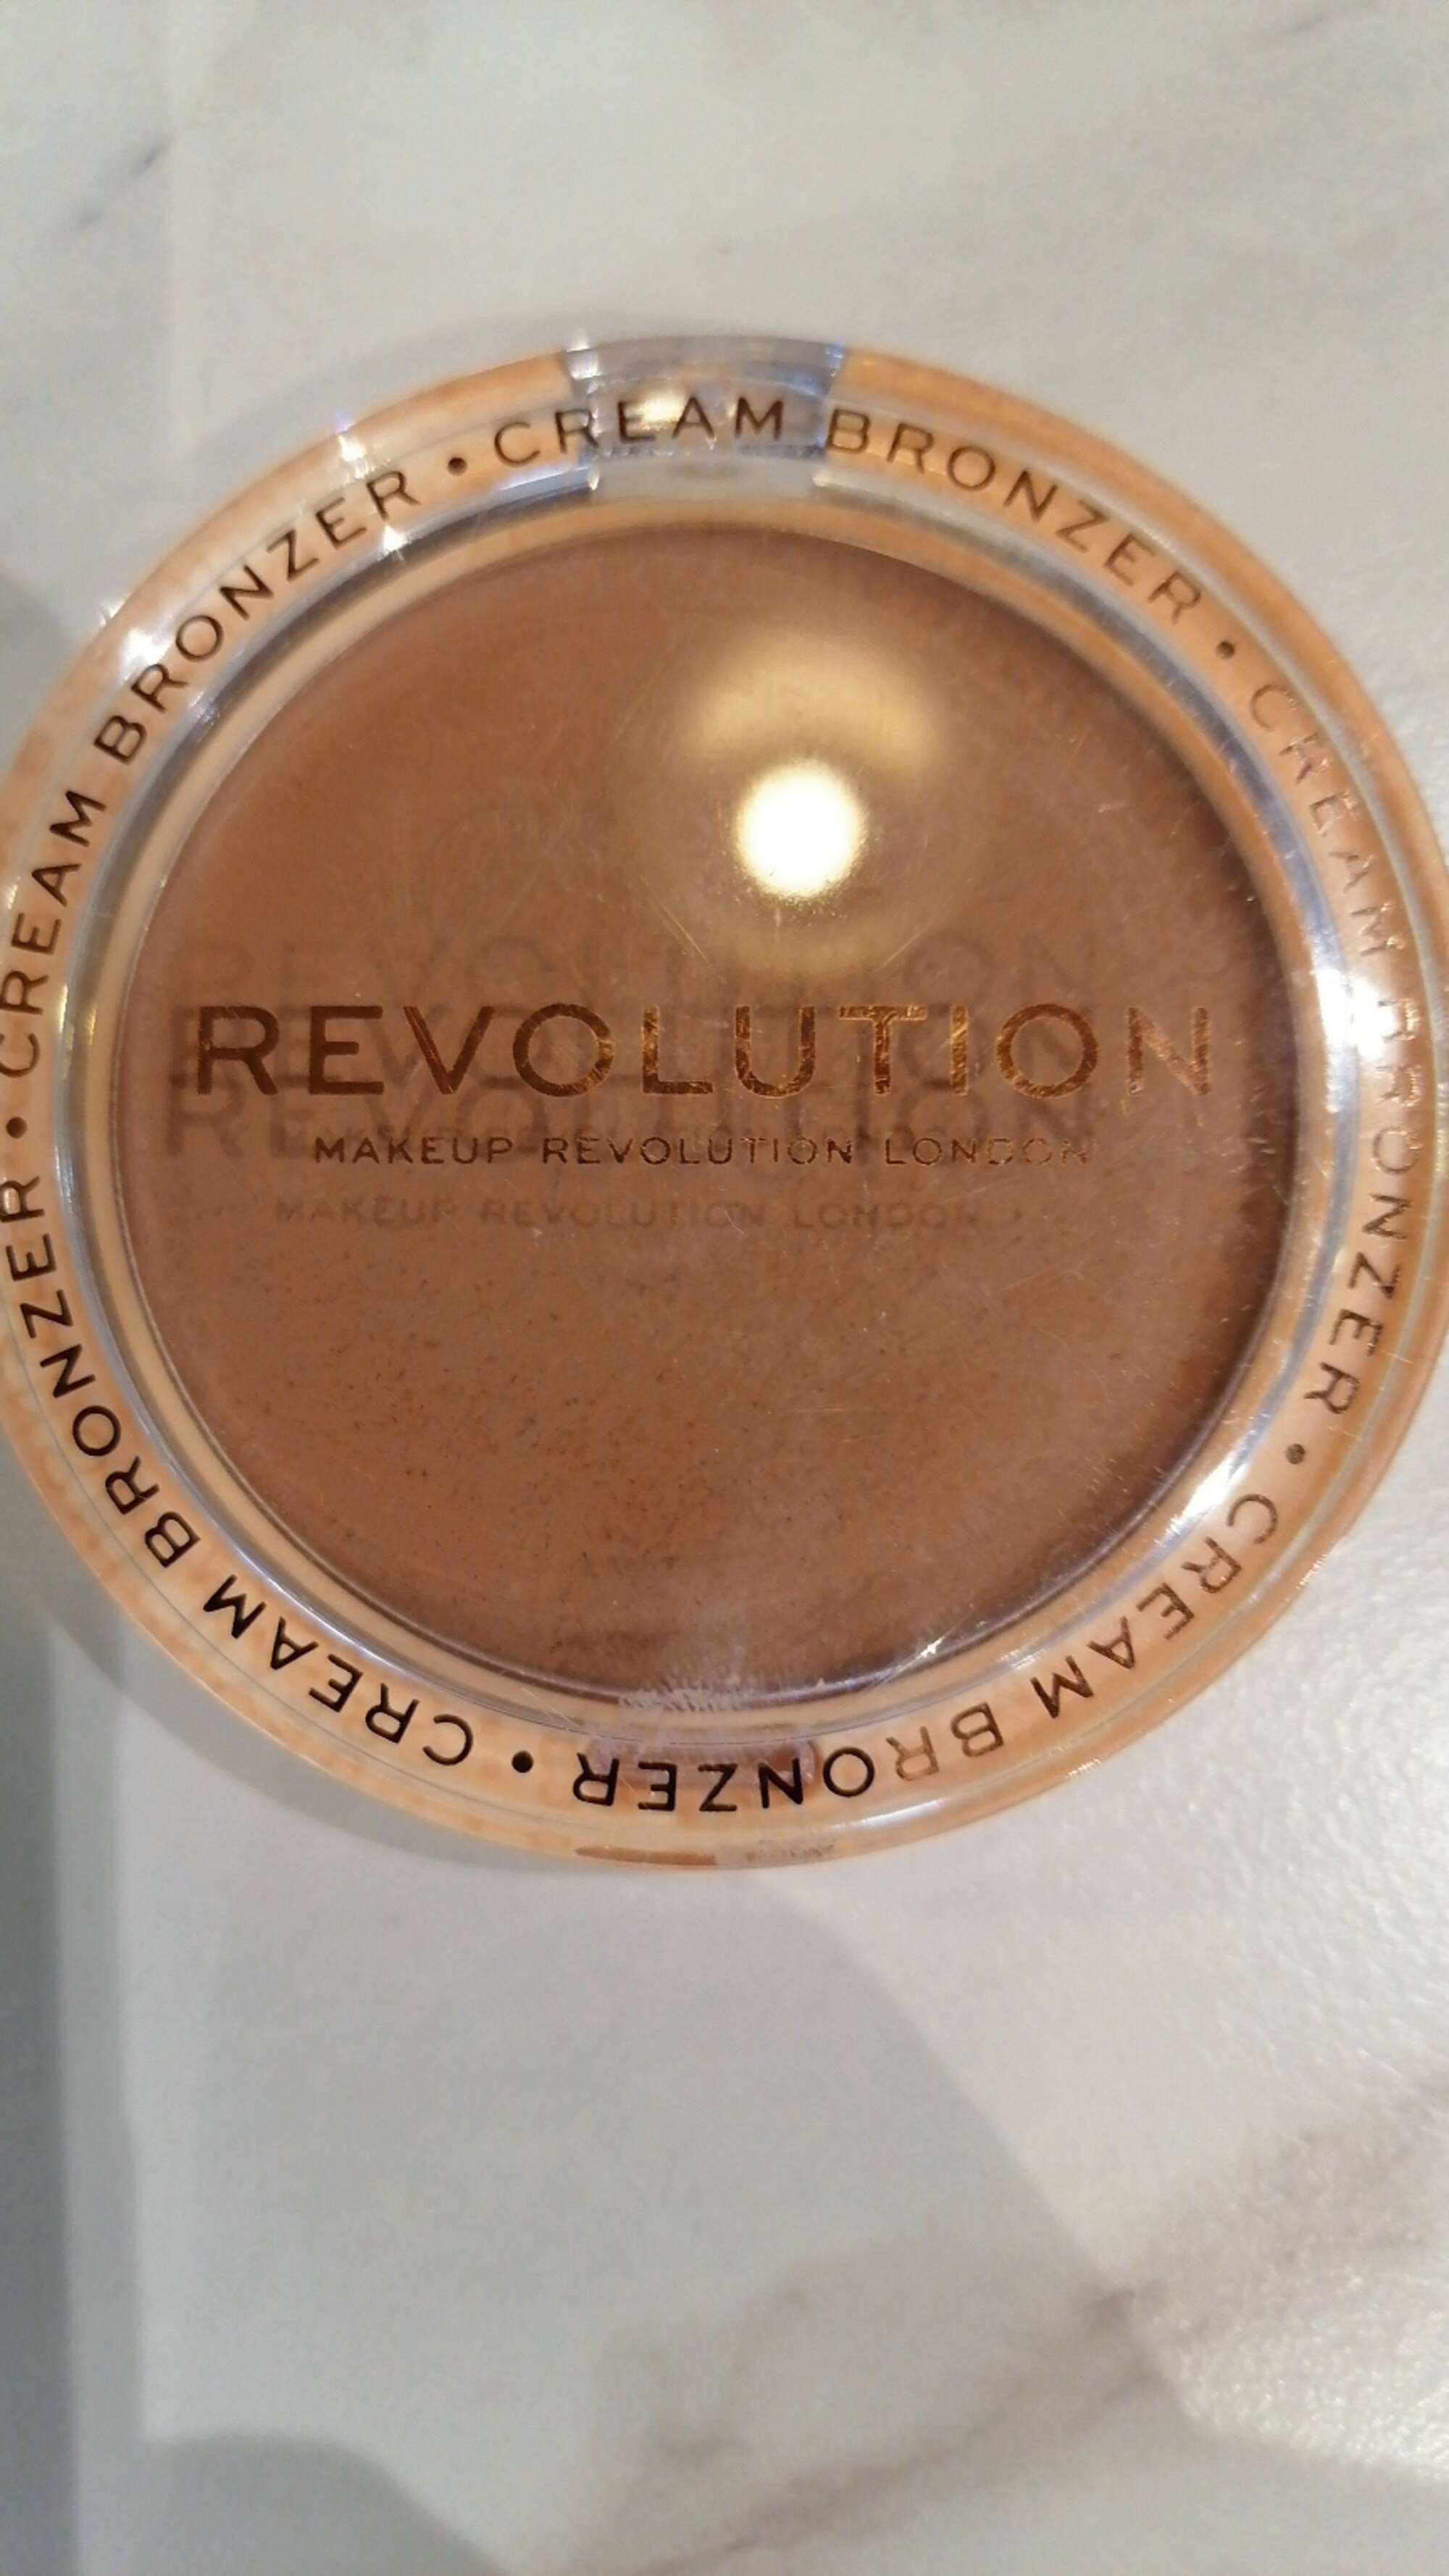 REVOLUTION - Cream bronzer